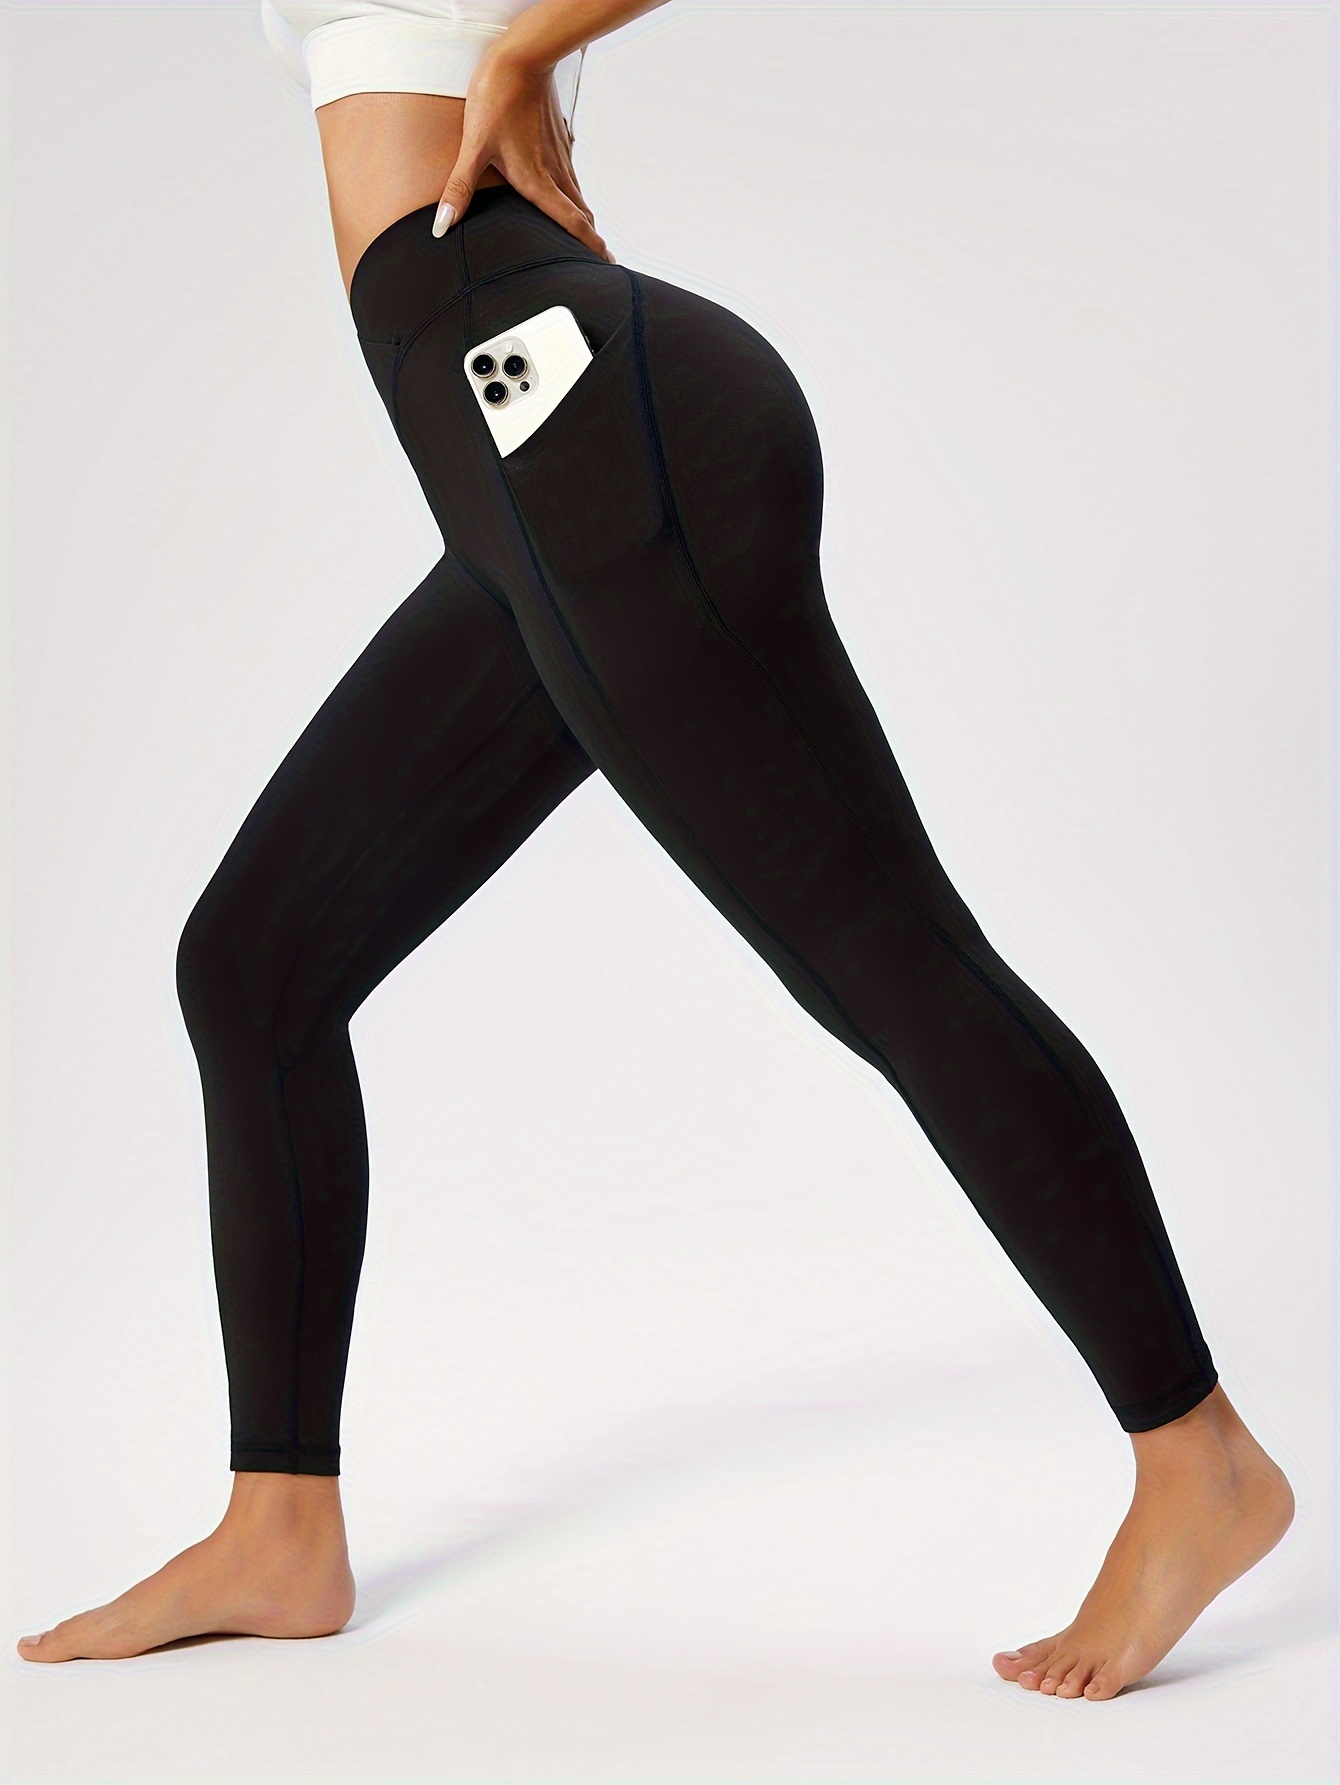 Buy Ewedoos Yoga Pants Women Leggings with Pockets High Waist